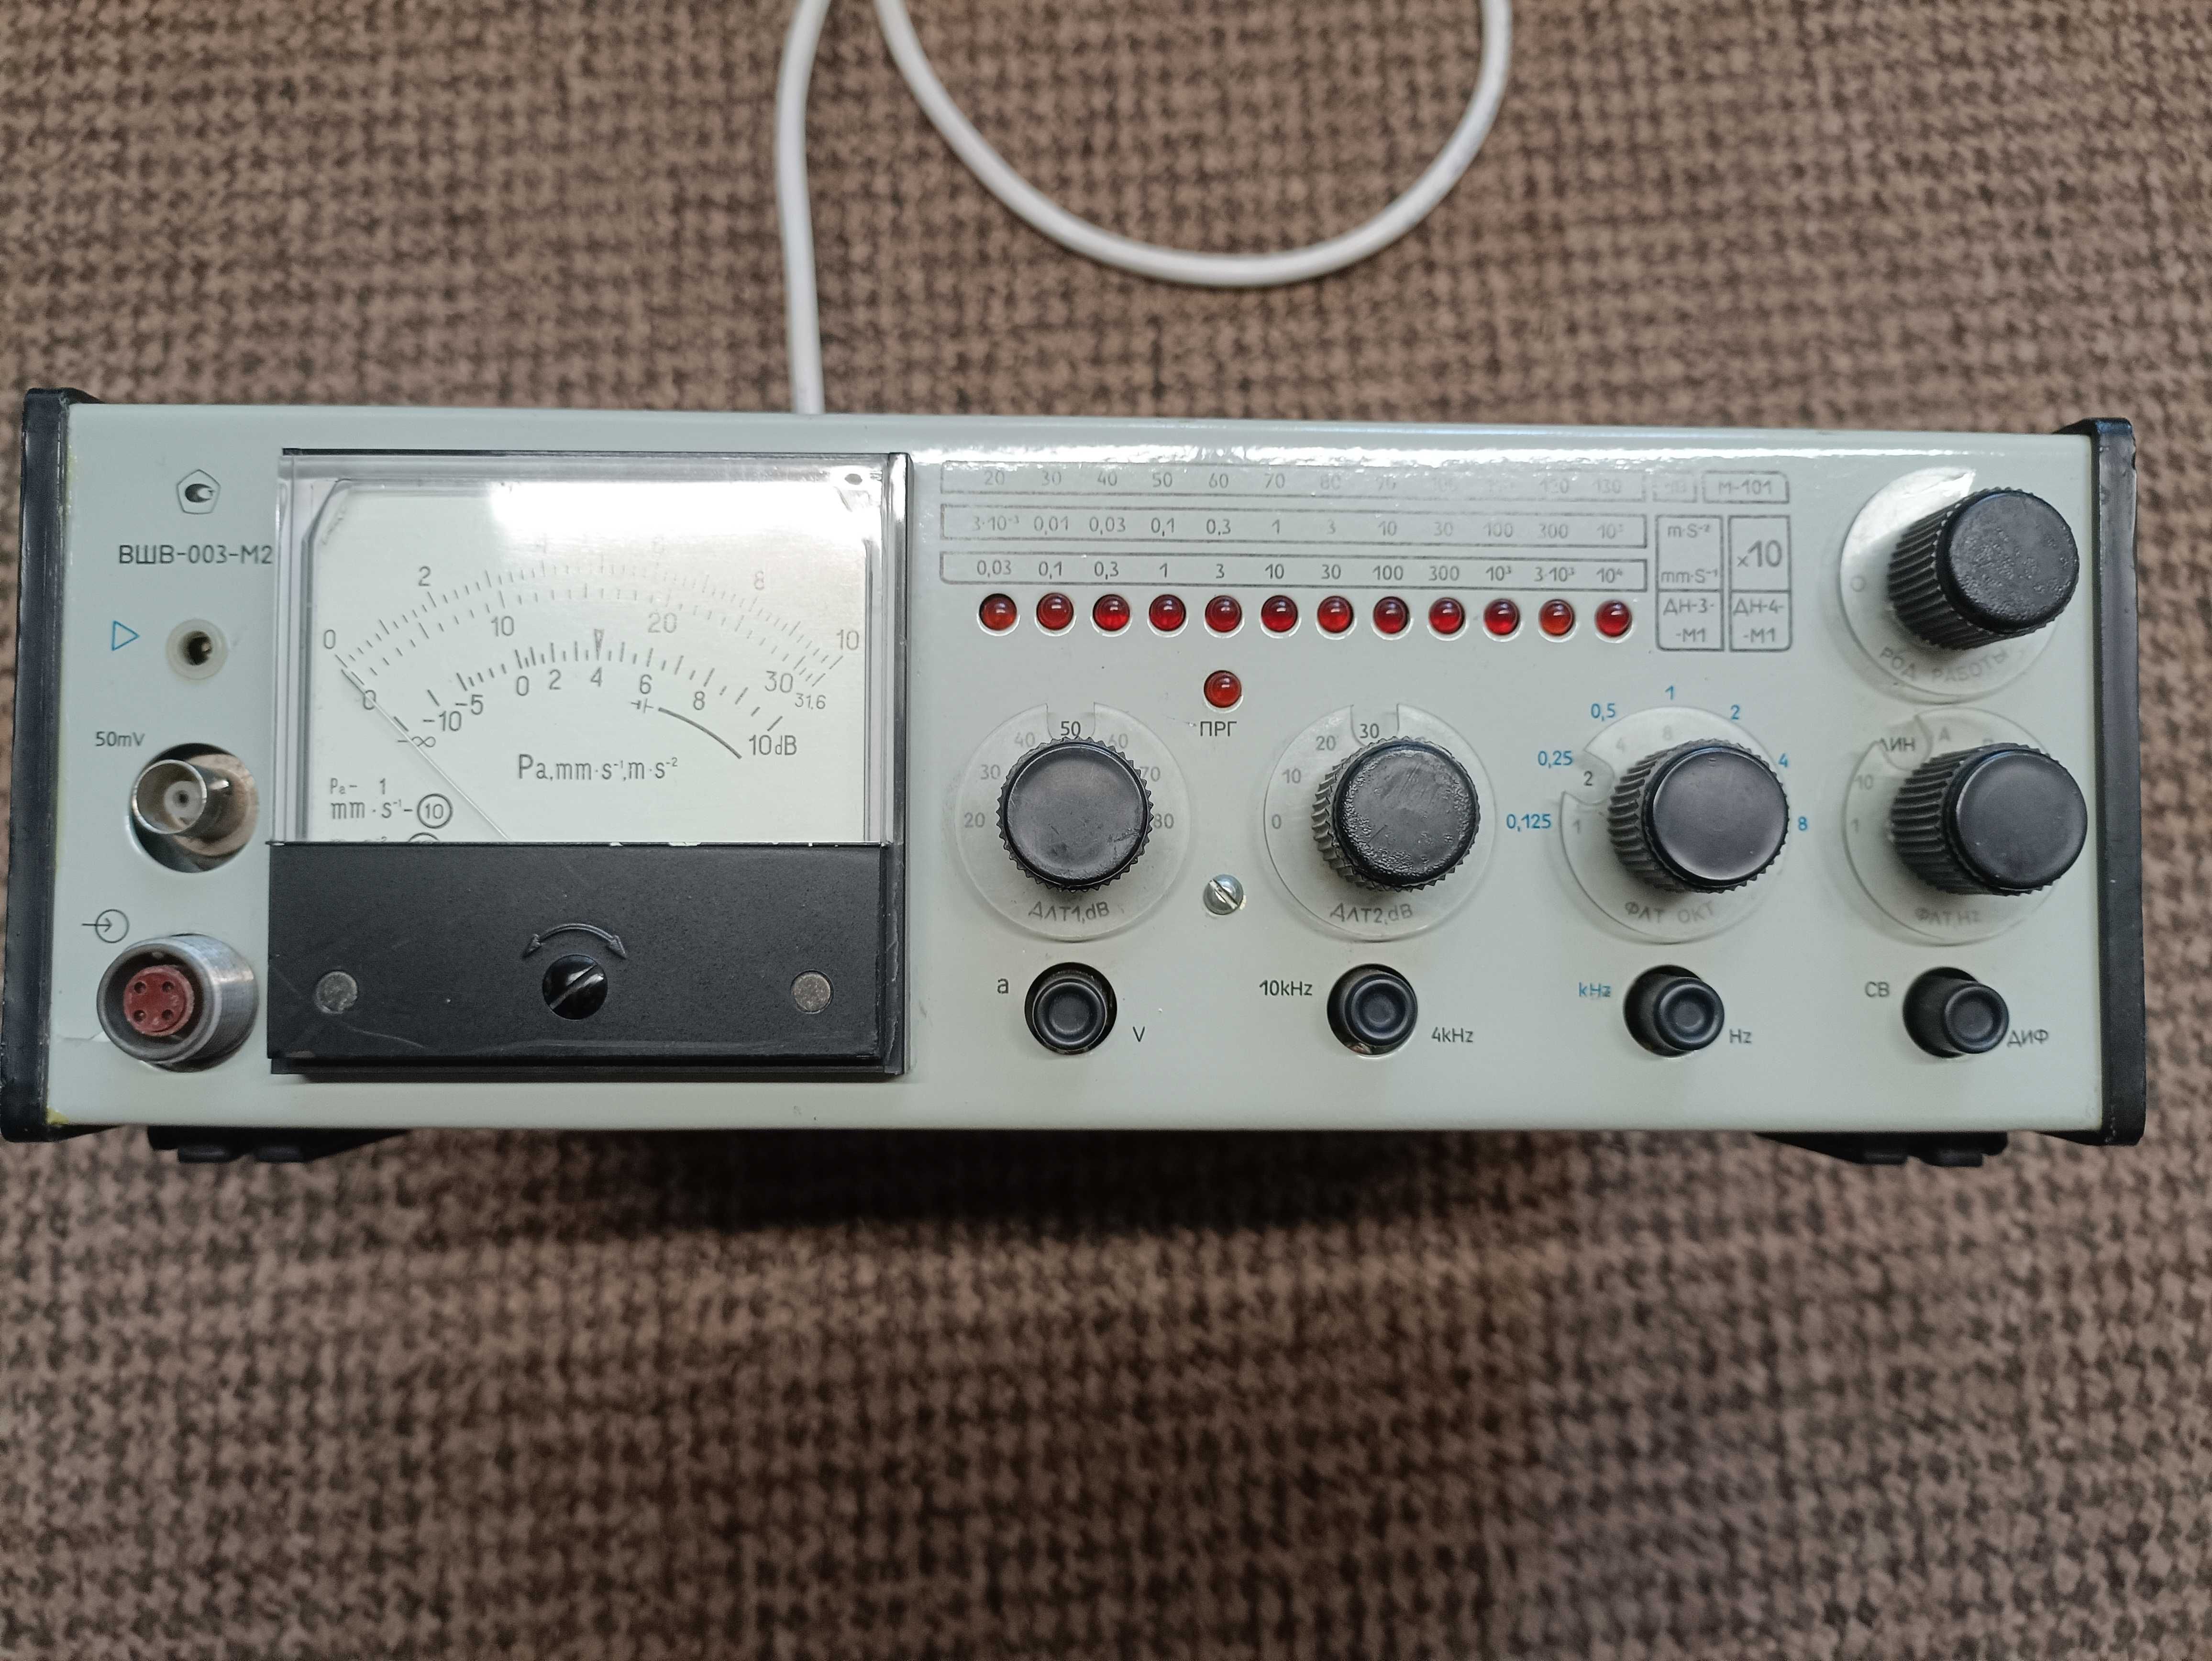 Комплект измерителя шума и вибрации шумомер ВШВ-003-М2